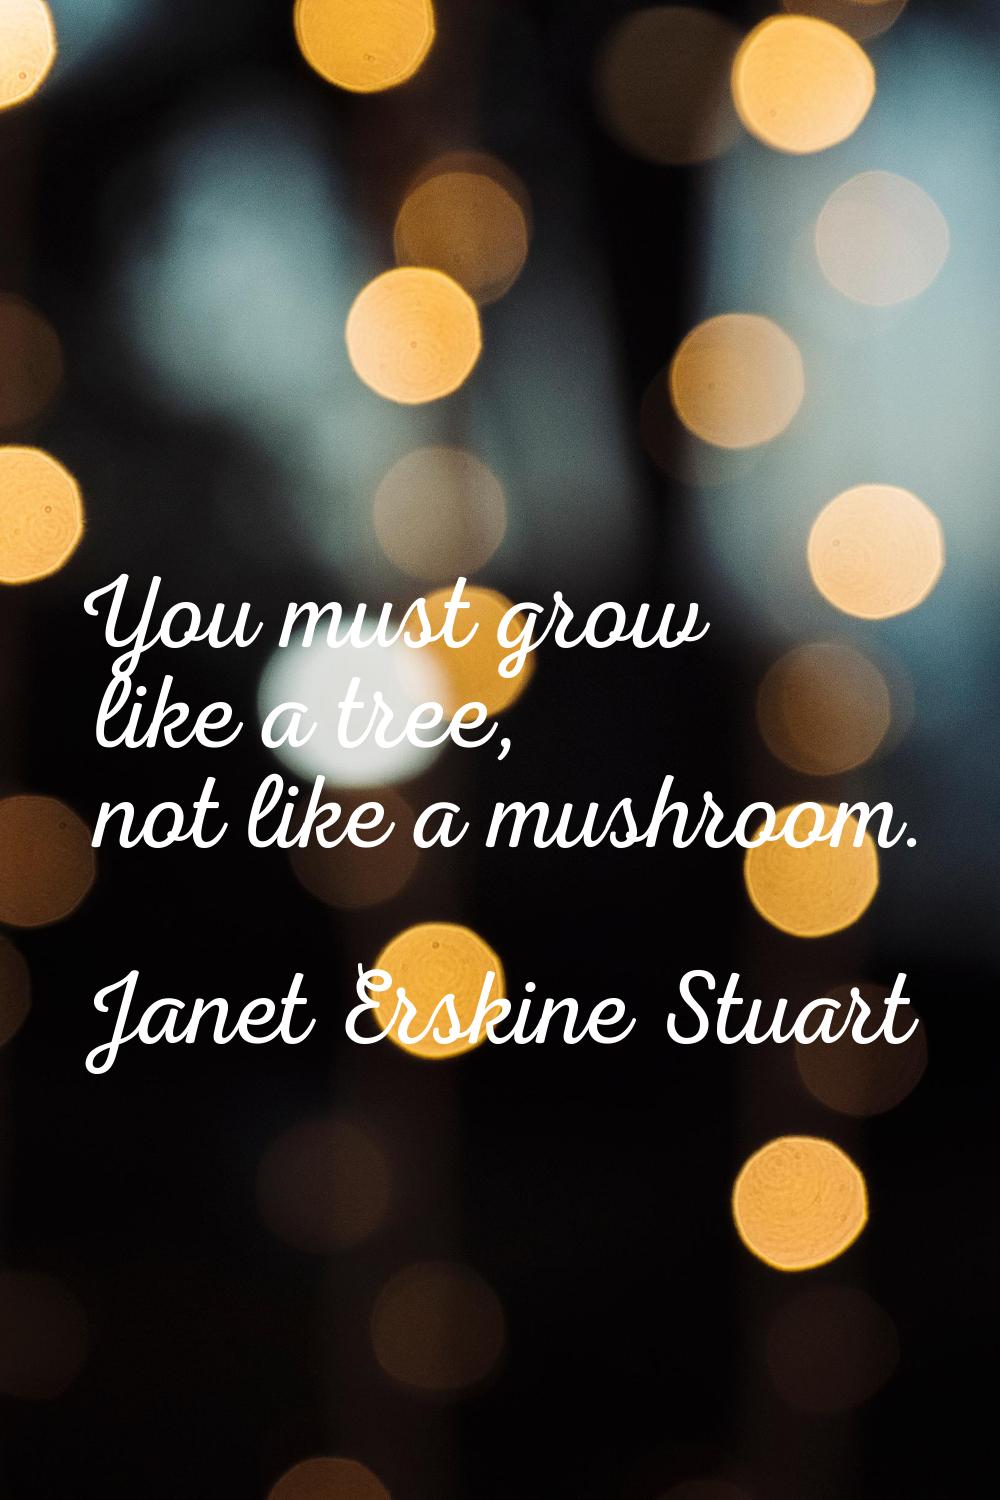 You must grow like a tree, not like a mushroom.